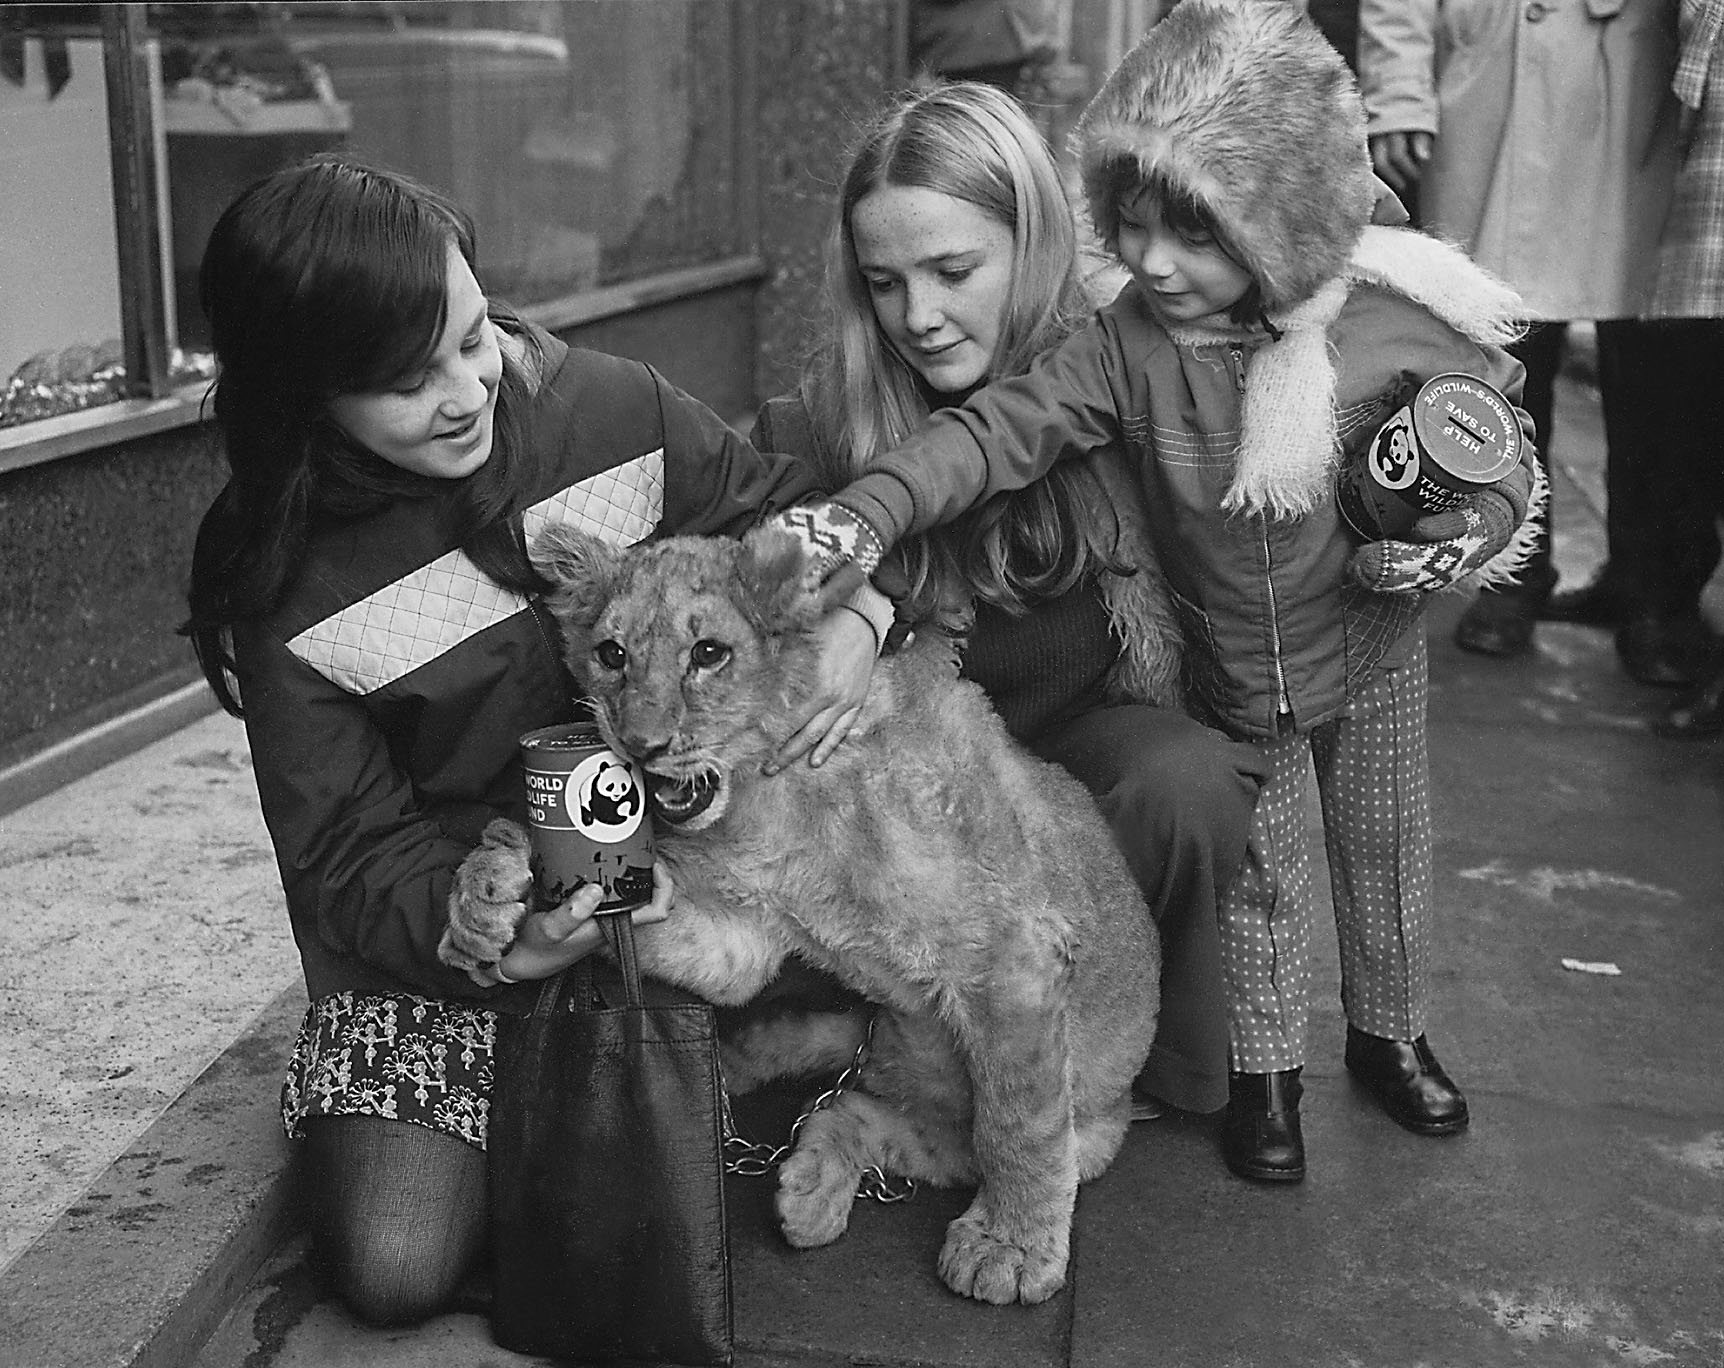 Aberdeen zoo in 1974